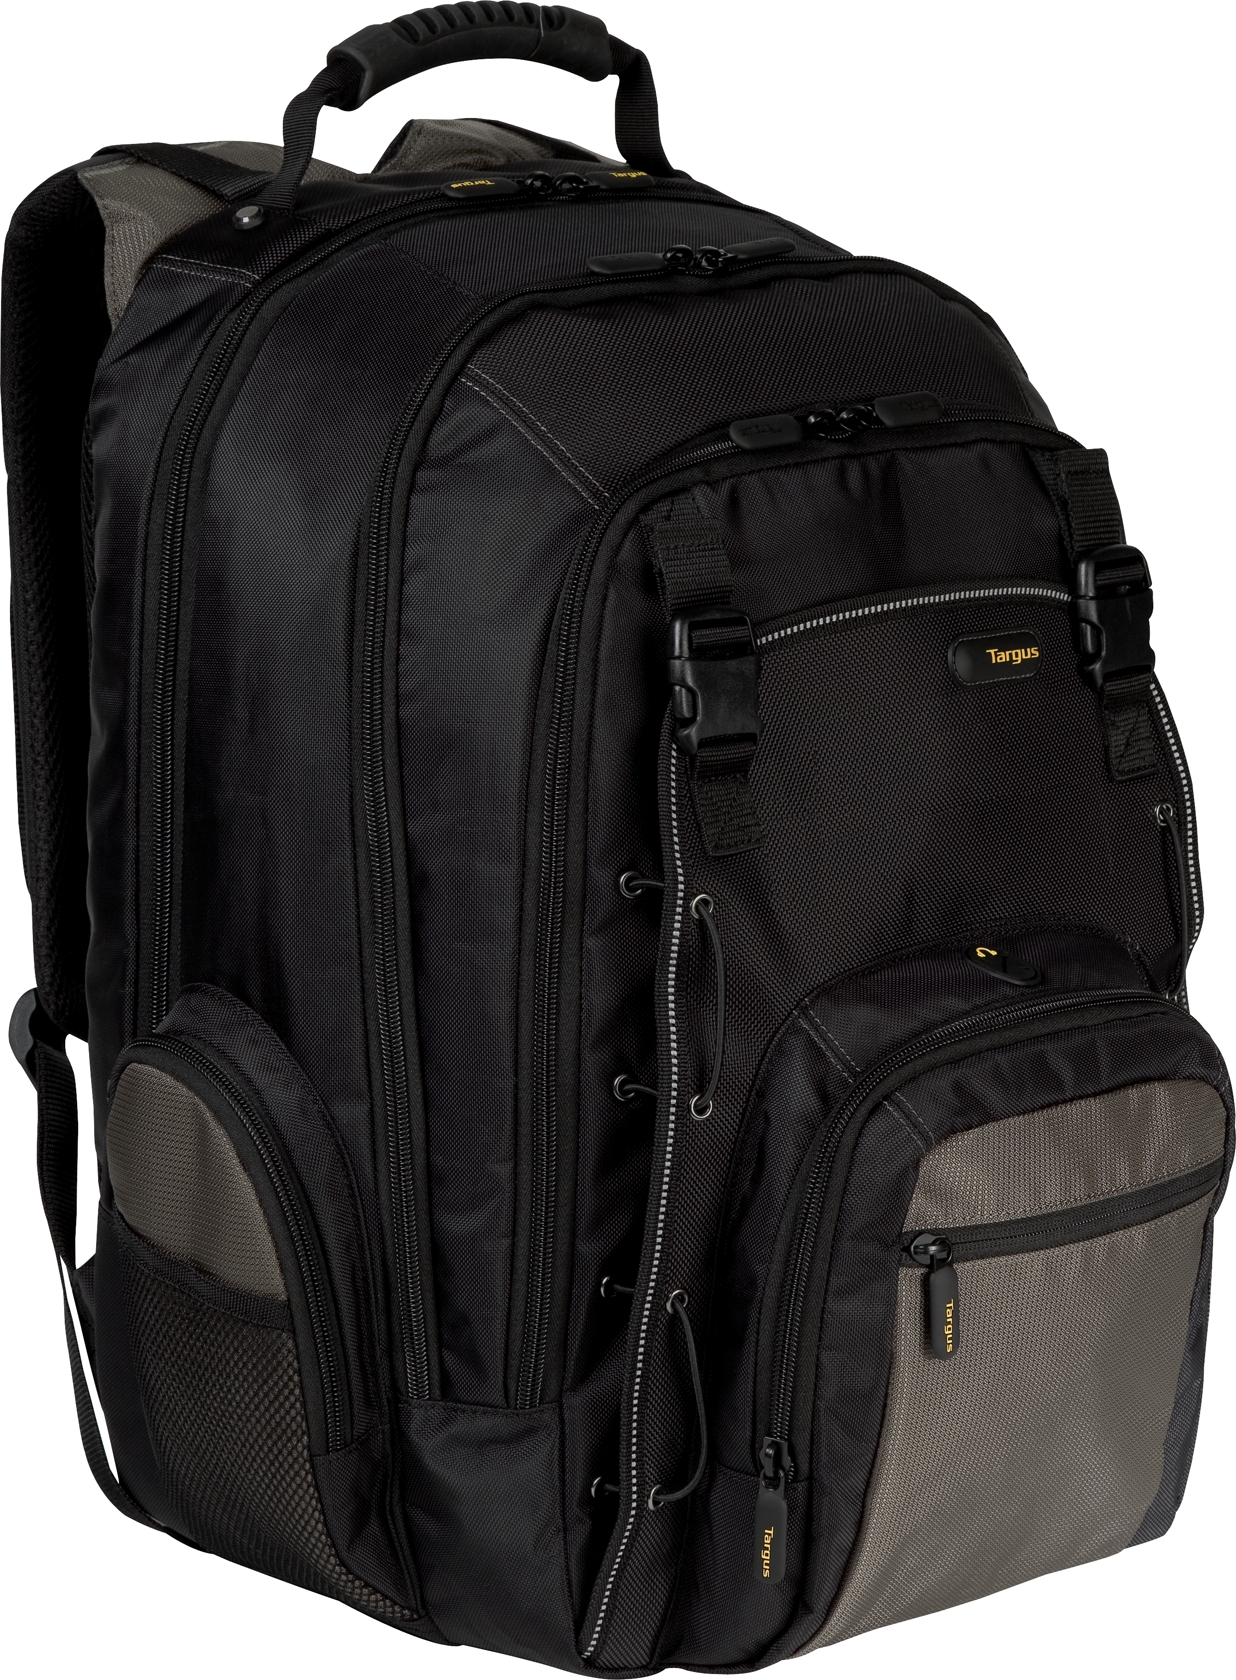 16” CityGear Backpack - TCG650 - Black/Gray: Backpacks: Targus